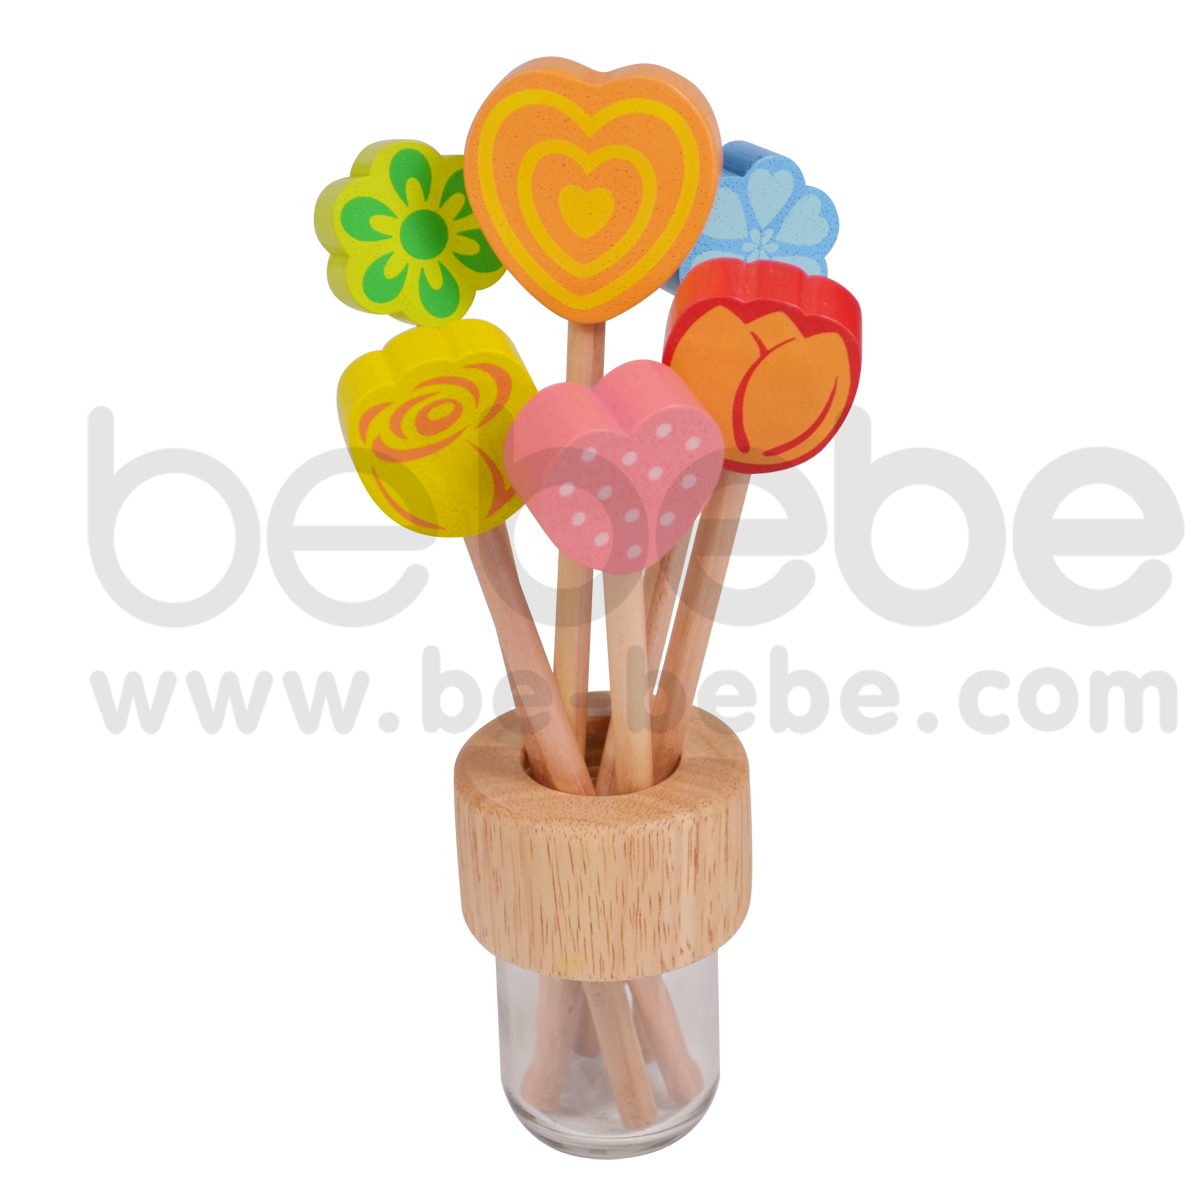 bebebe : Pencil-S-Spot Heart/Orange